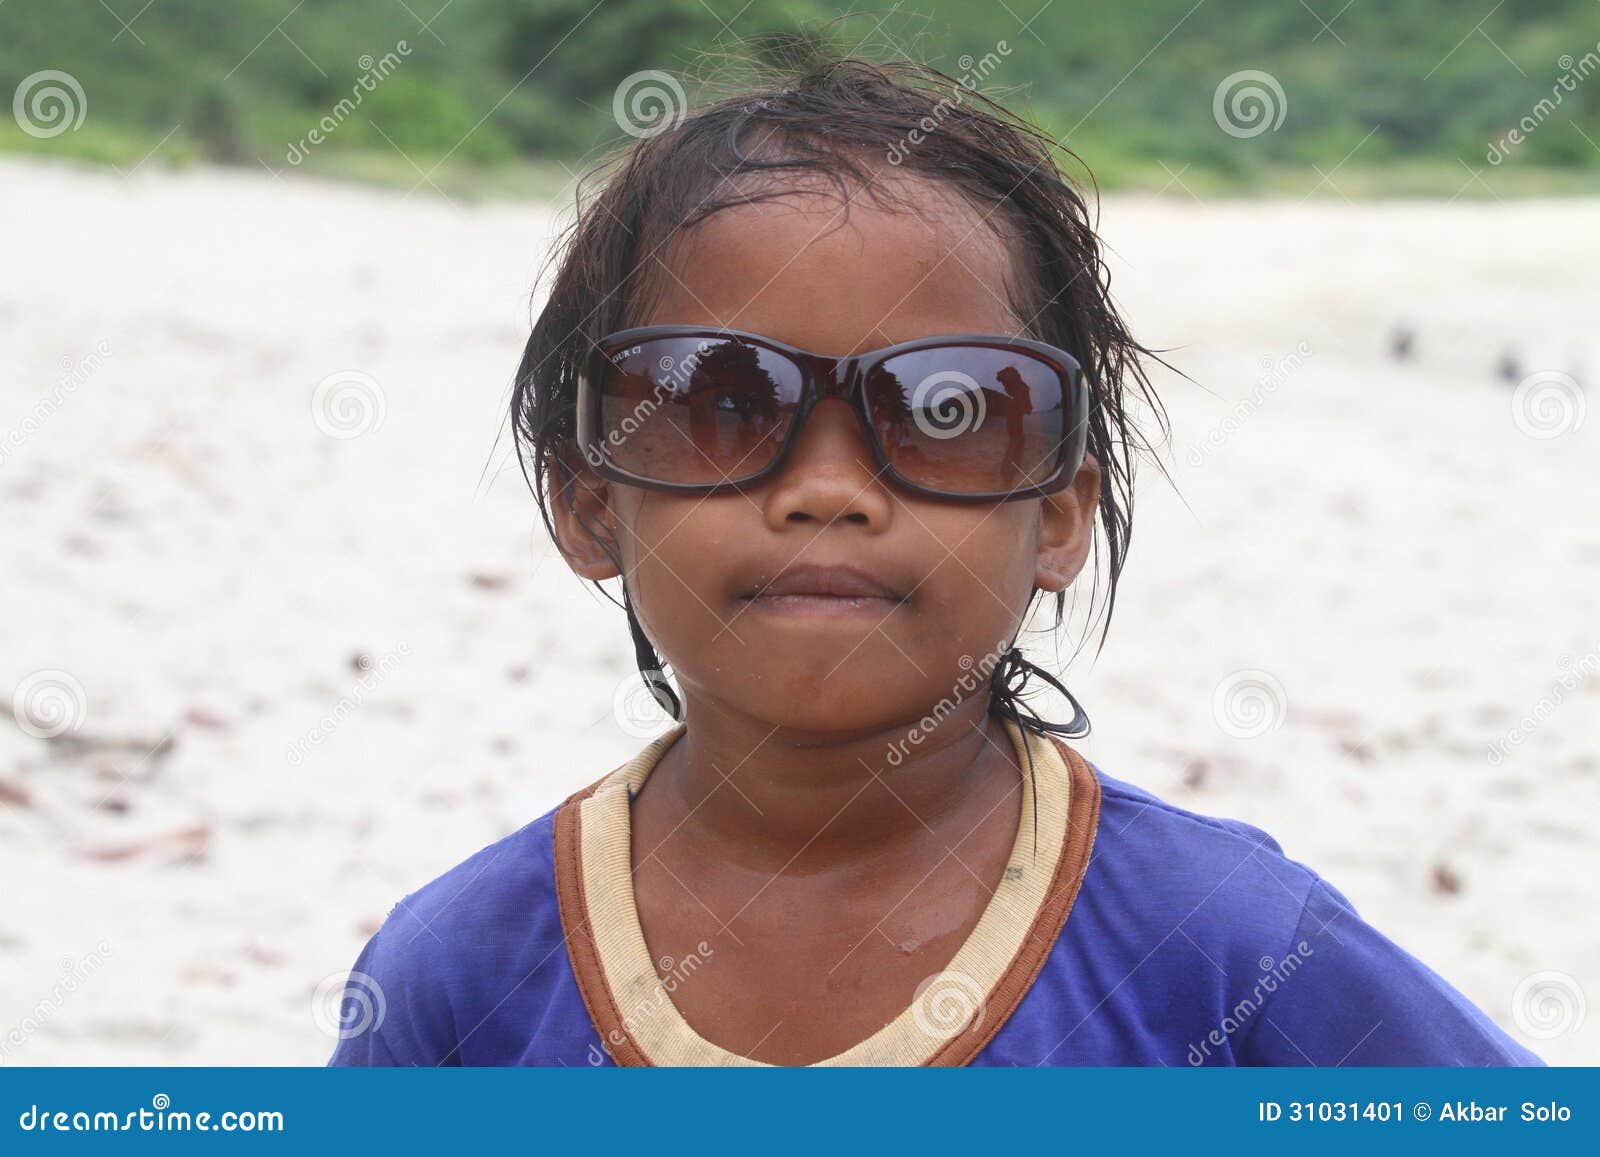 从印度的可怜的孩子 图库摄影片. 图片 包括有 女孩, 作用, 册页, 愉快, 街道, 尘土, 人们, 一起 - 115684067